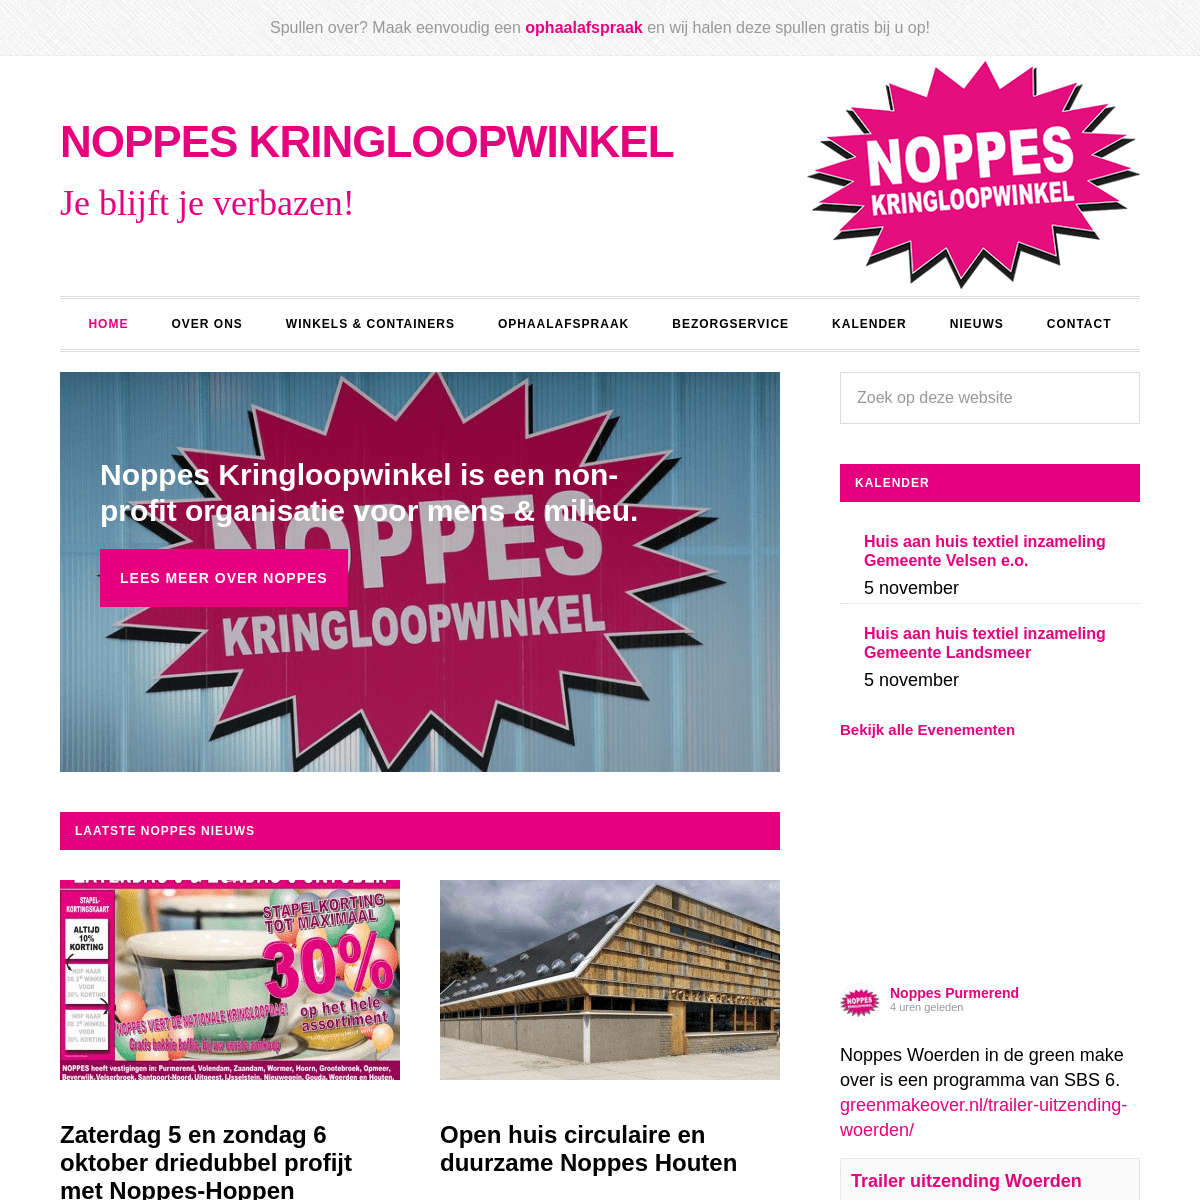 A complete backup of noppeskringloopwinkel.nl